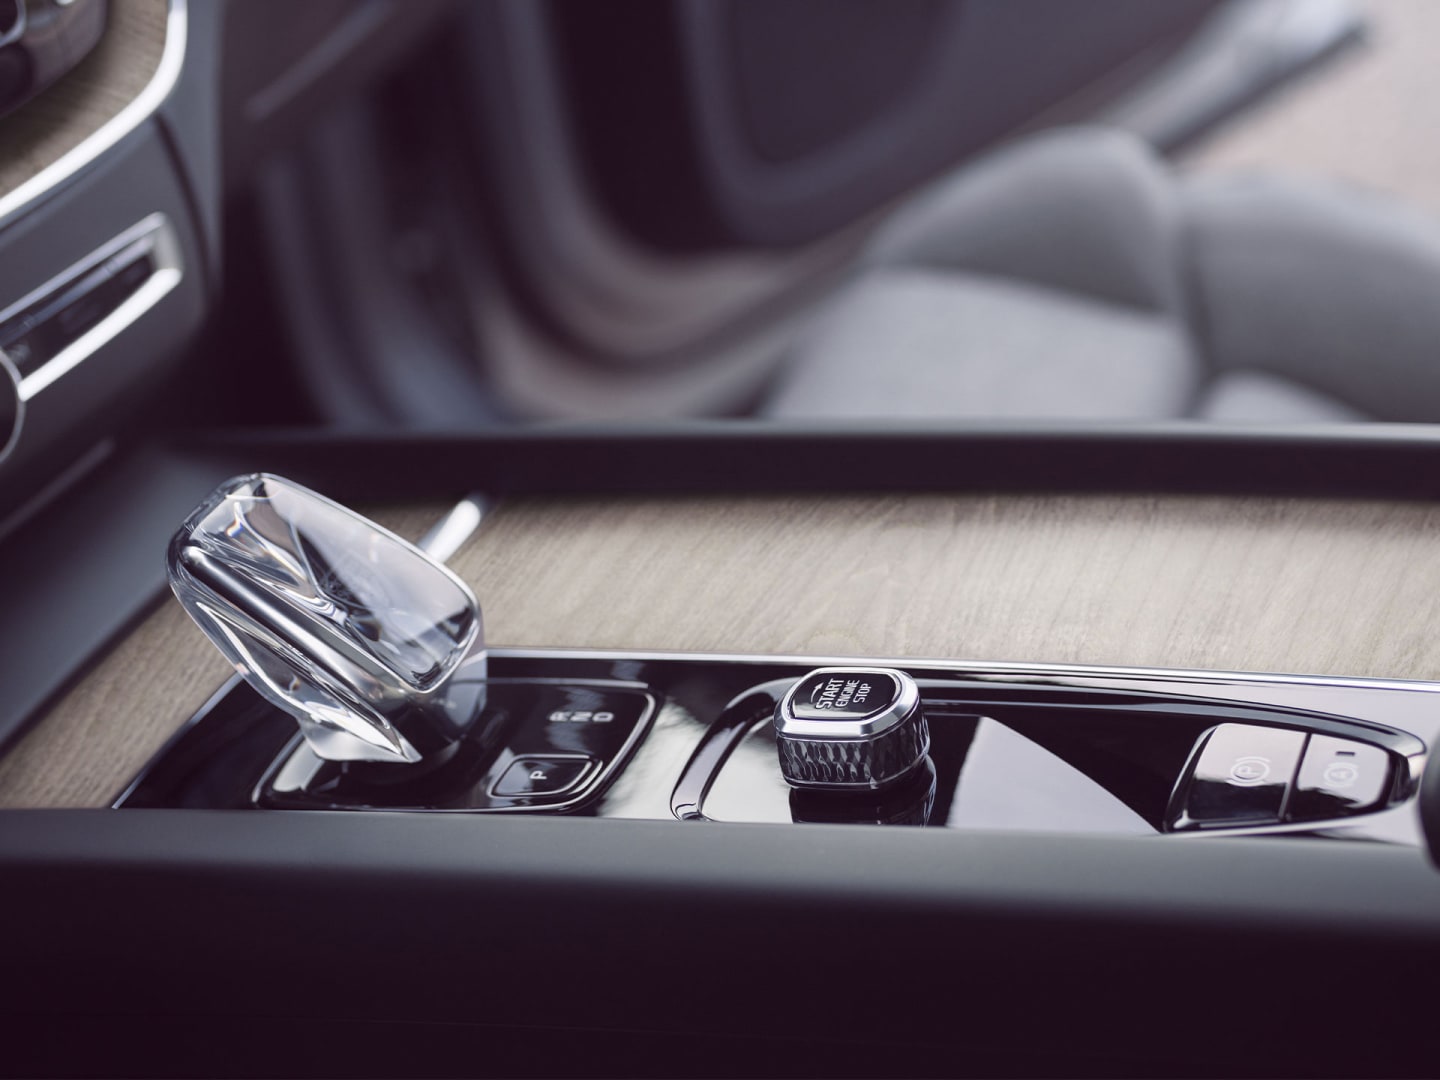 En växelspak av äkta svensk kristall från Orrefors inuti en Volvo XC60 laddhybrid.